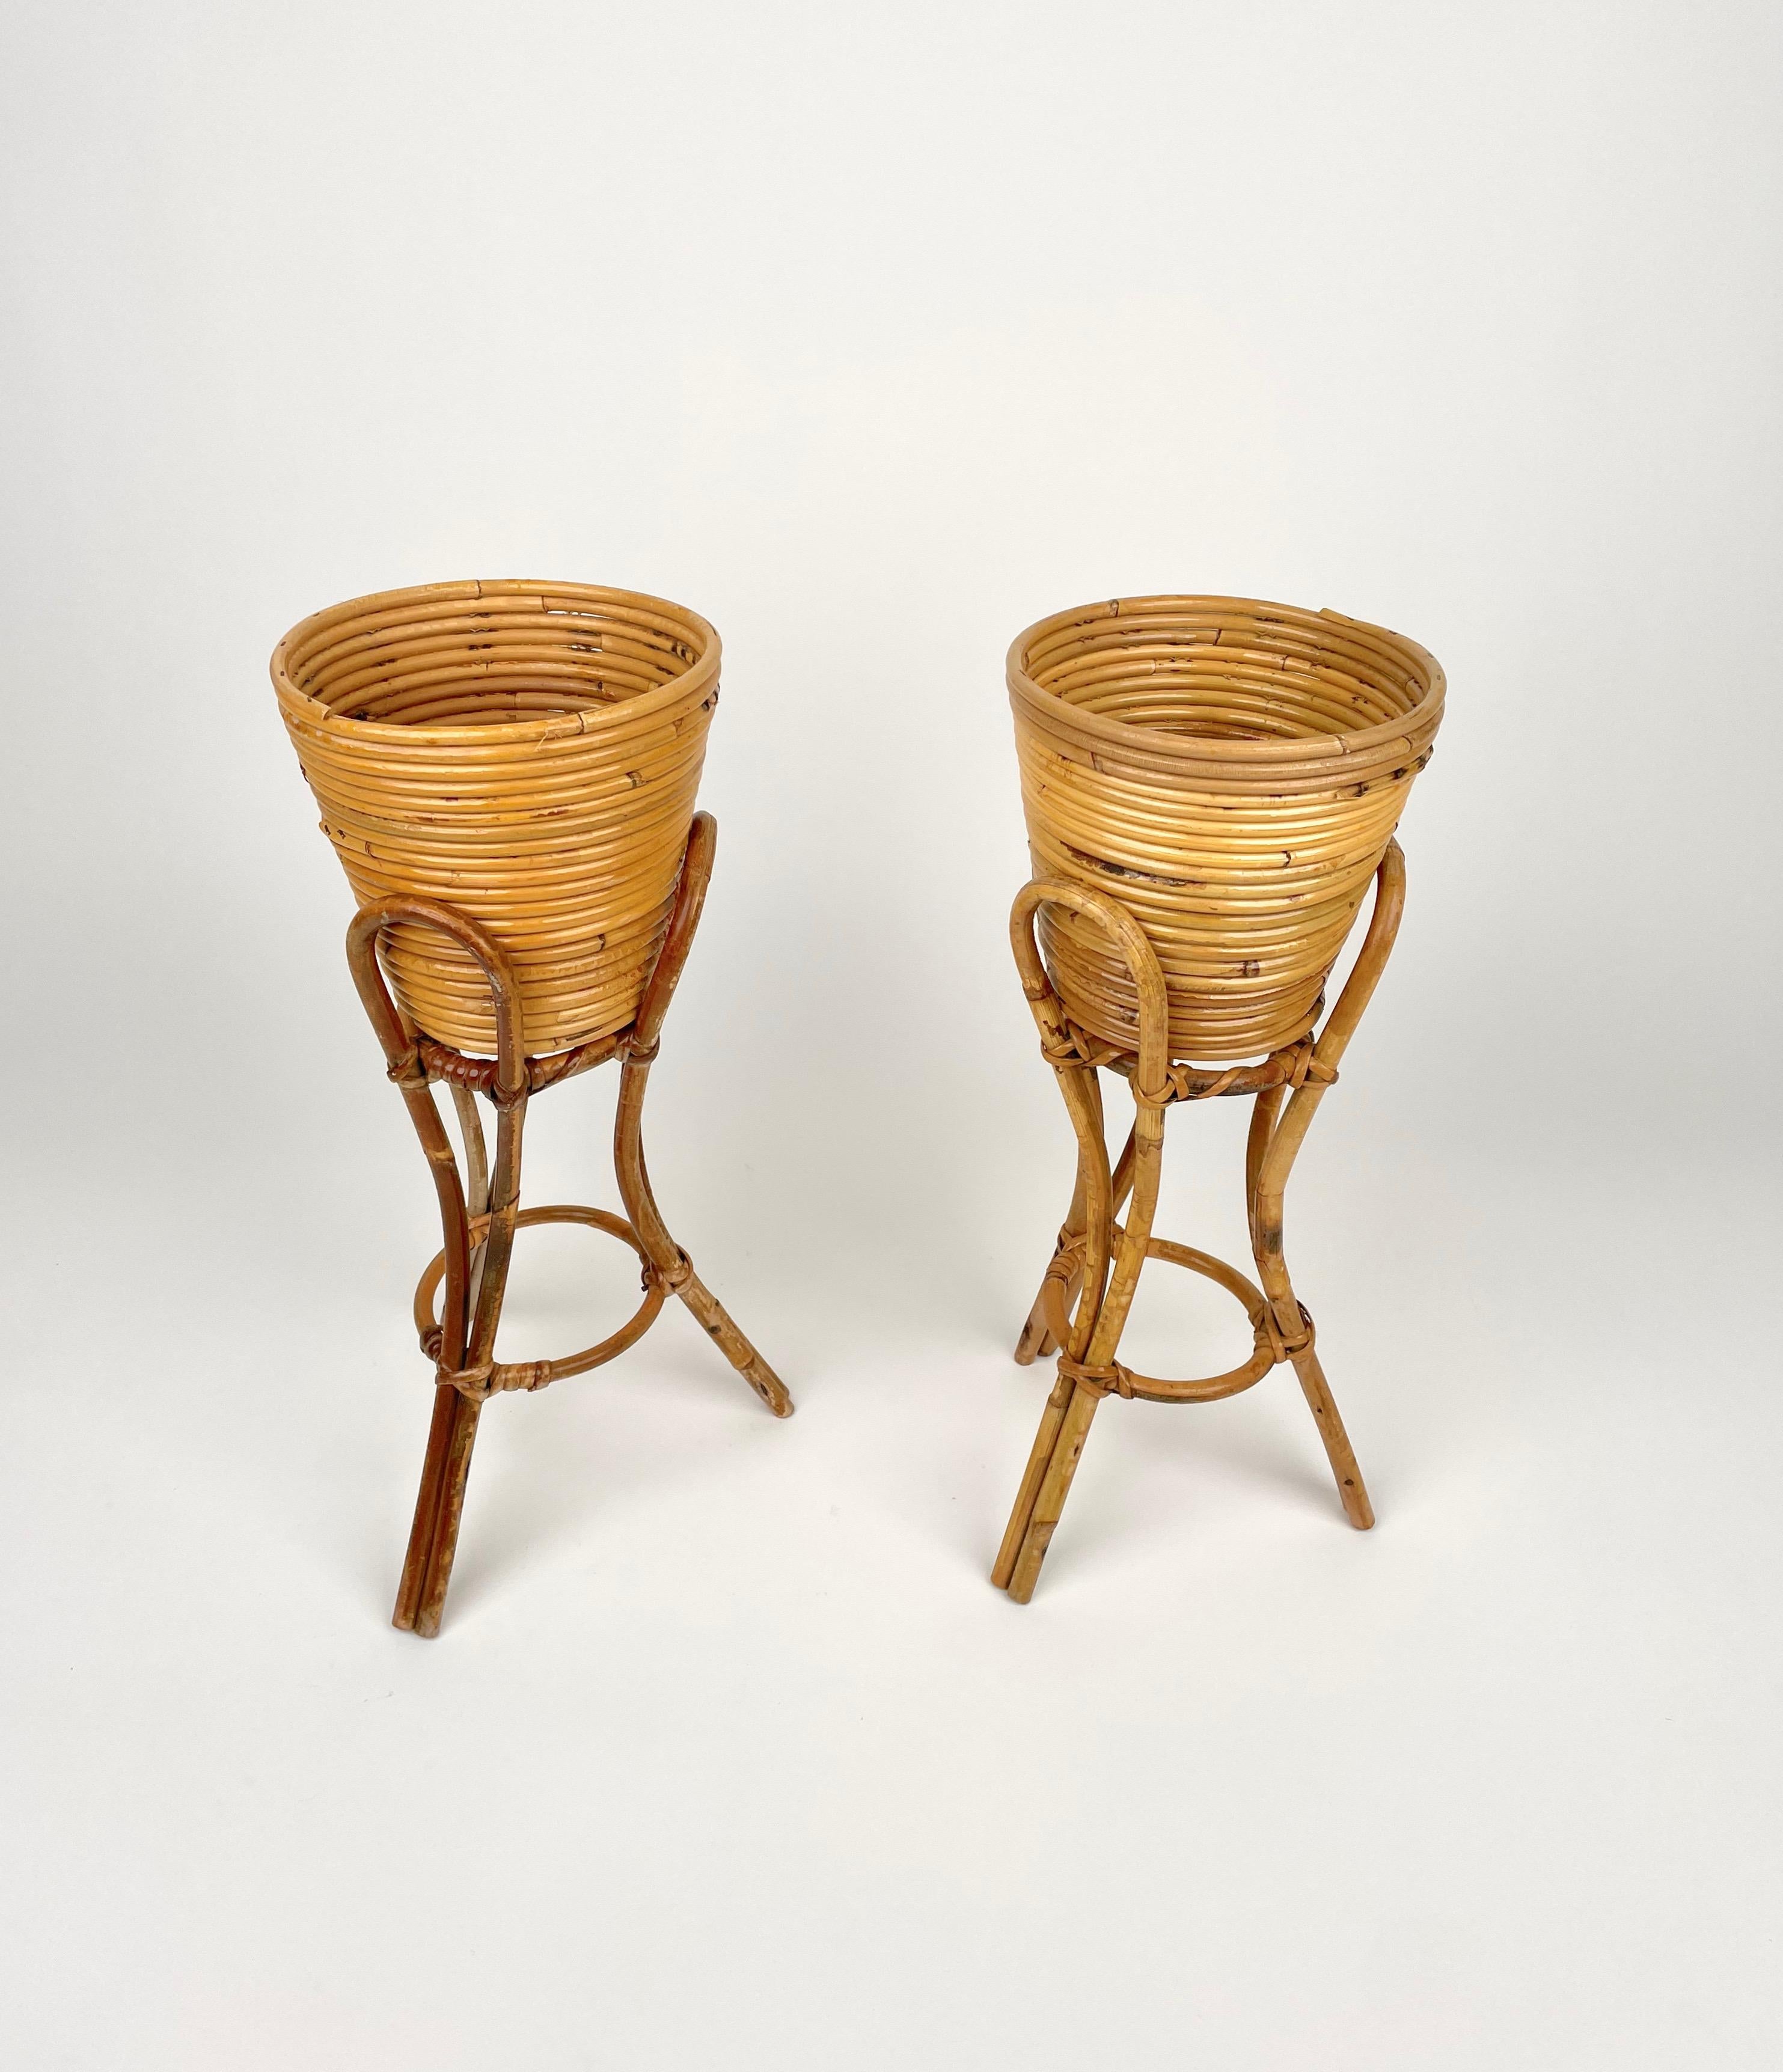 Paar erhöhte Vasenhalter aus Rattan und Bambus, hergestellt in Italien in den 1960er Jahren.